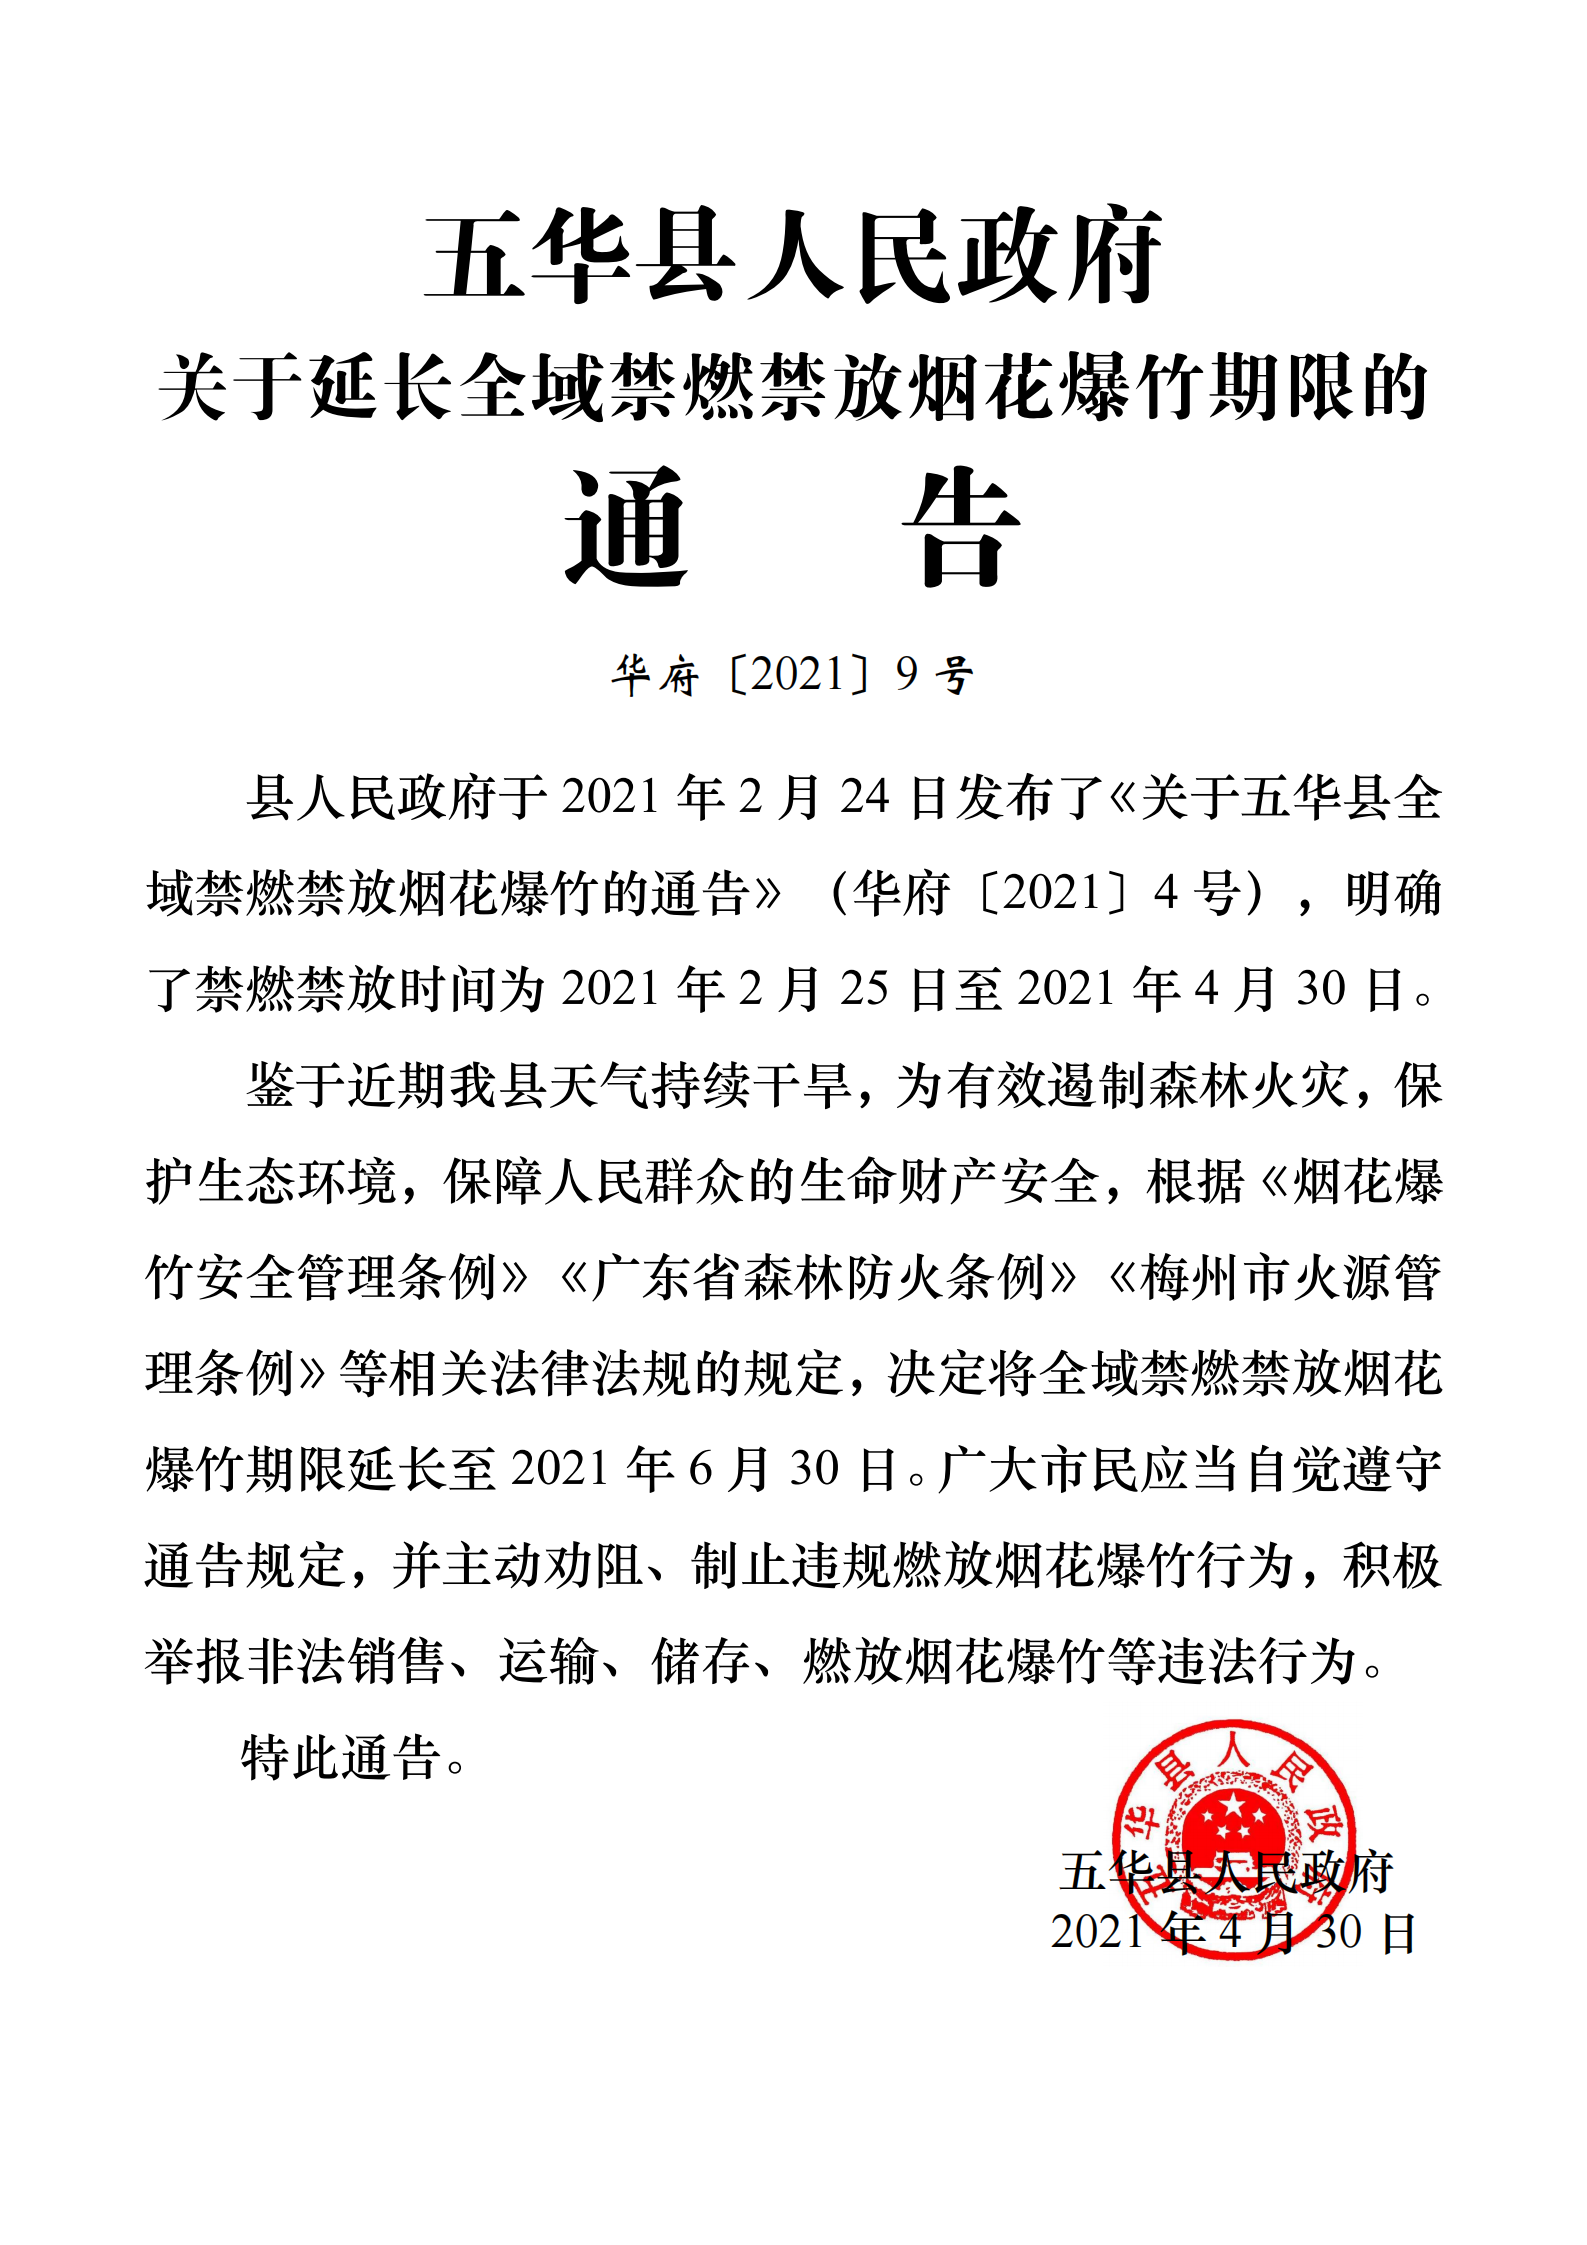 9号五华县人民政府关于延长全域禁燃禁放烟花爆竹期限的通告_00.png